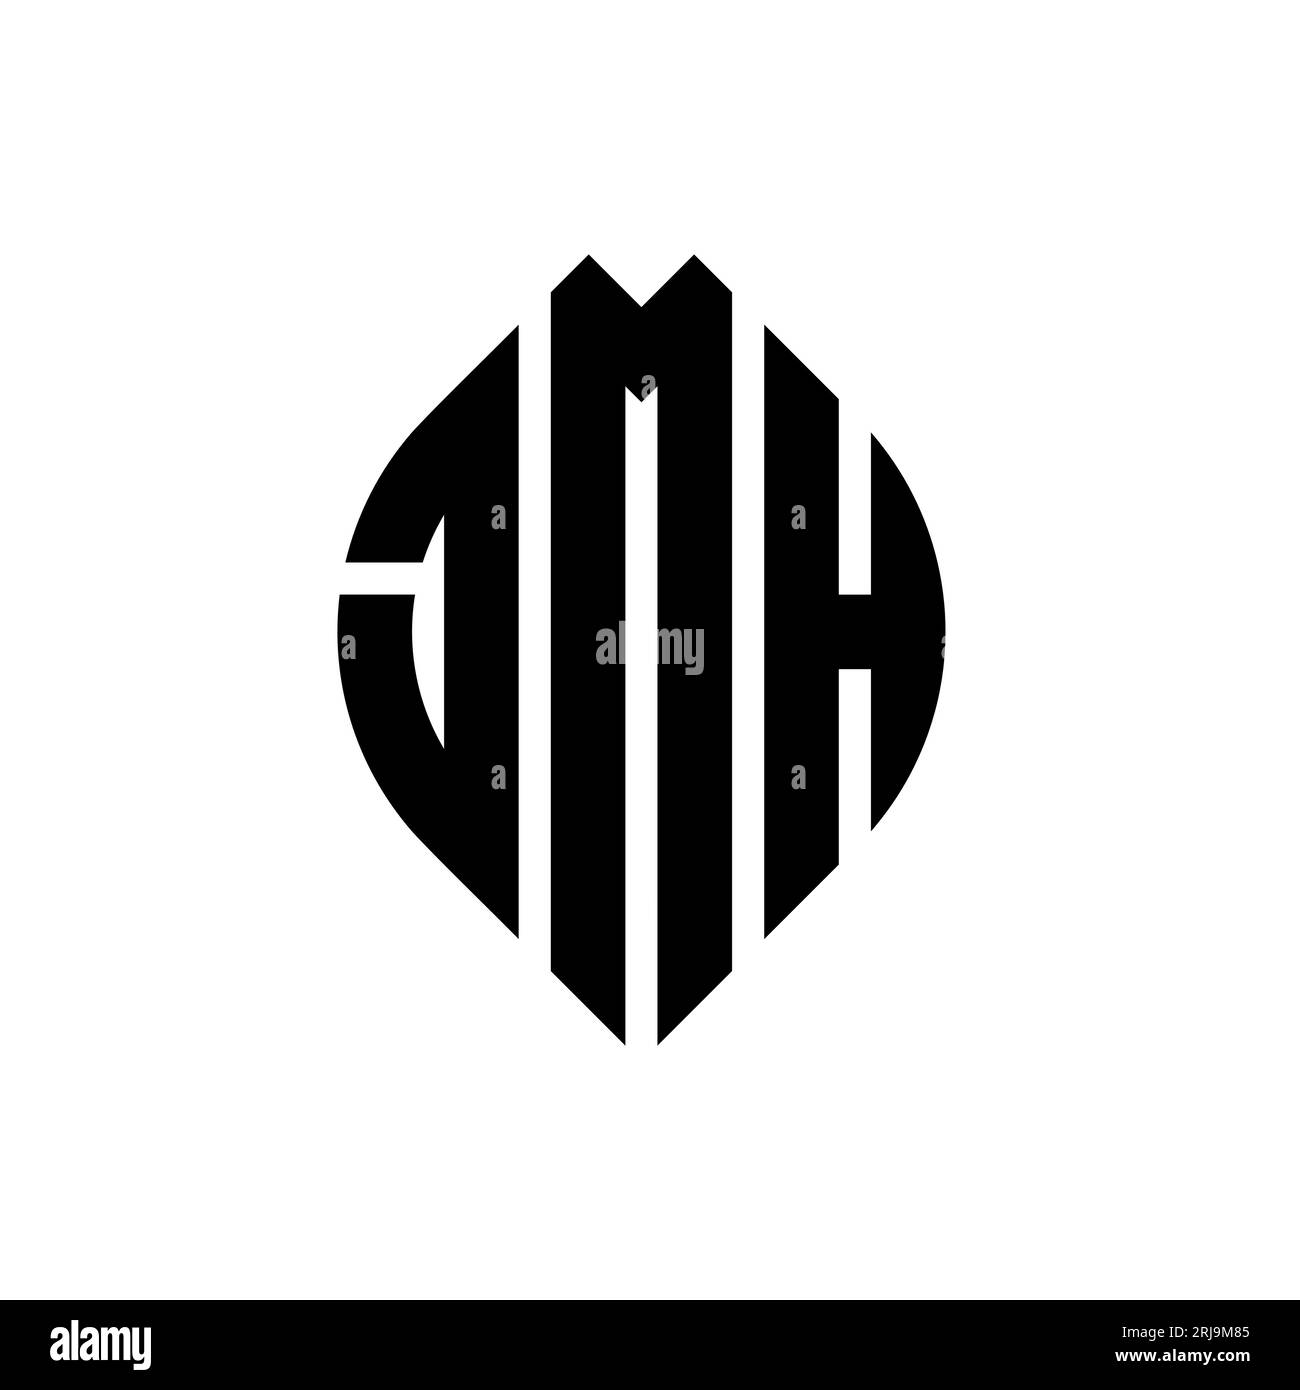 JMH kreisförmiges Logo mit Kreis- und Ellipsenform. JMH-Ellipsenbuchstaben im typografischen Stil. Die drei Initialen bilden ein kreisförmiges Logo. JMH-CI Stock Vektor